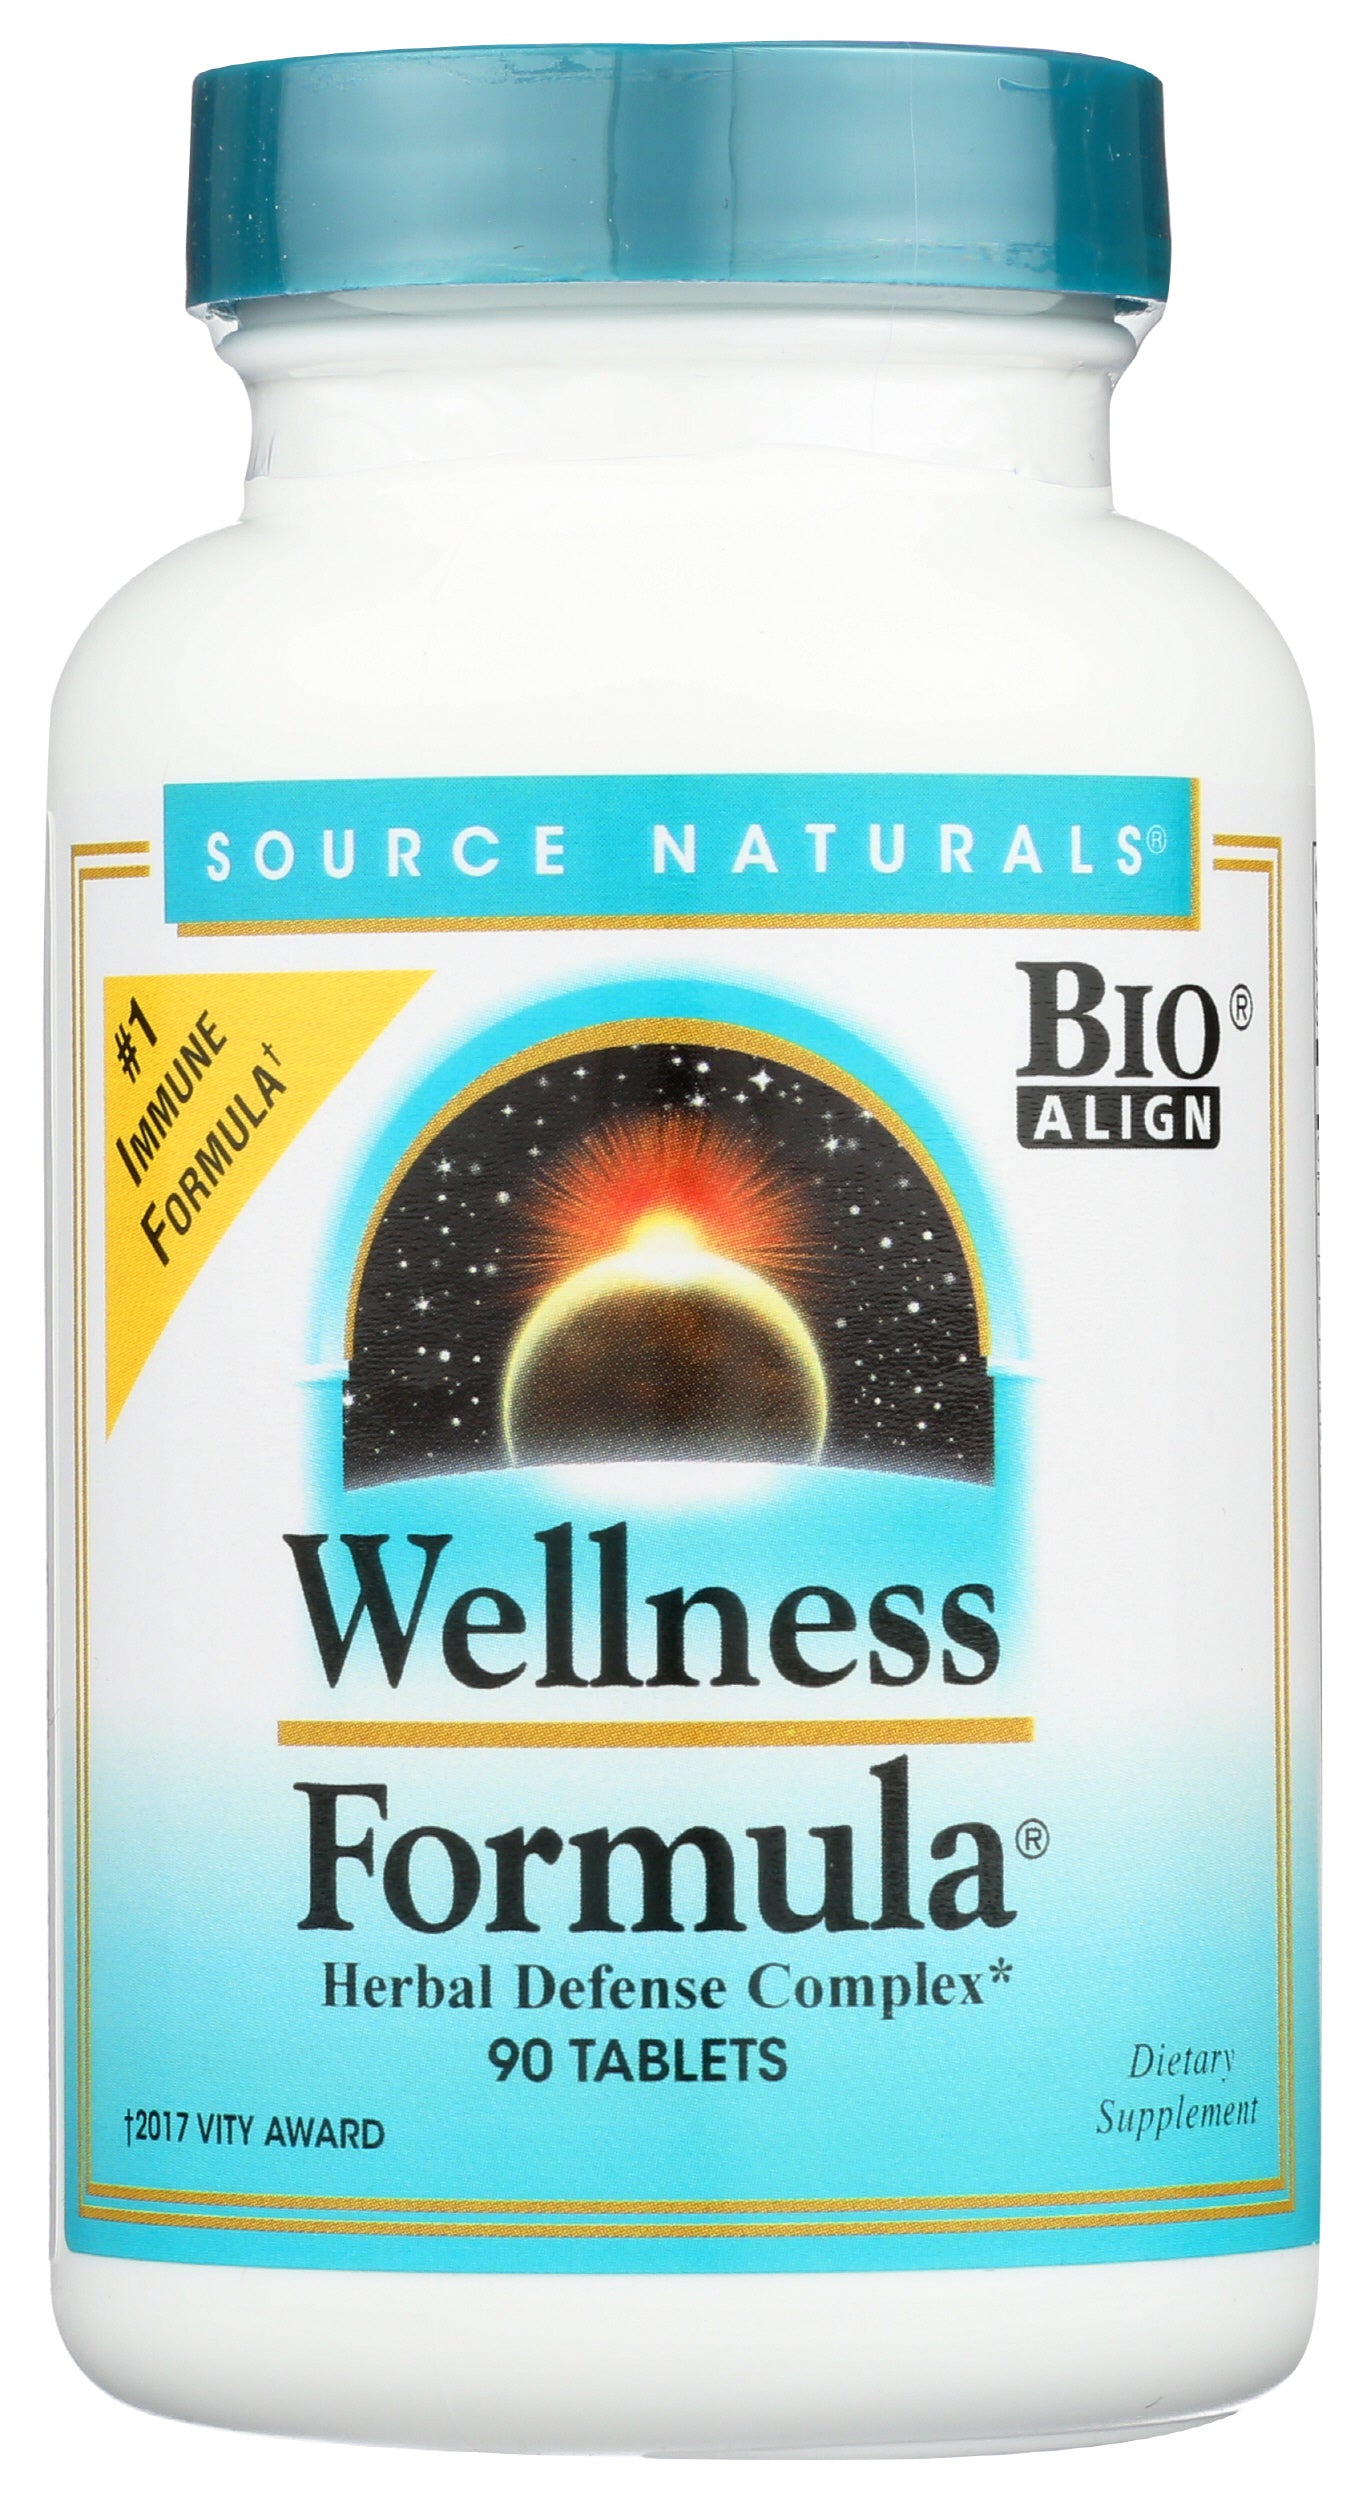 Source Naturals Wellness Formula 90 Tablets Front of Bottle